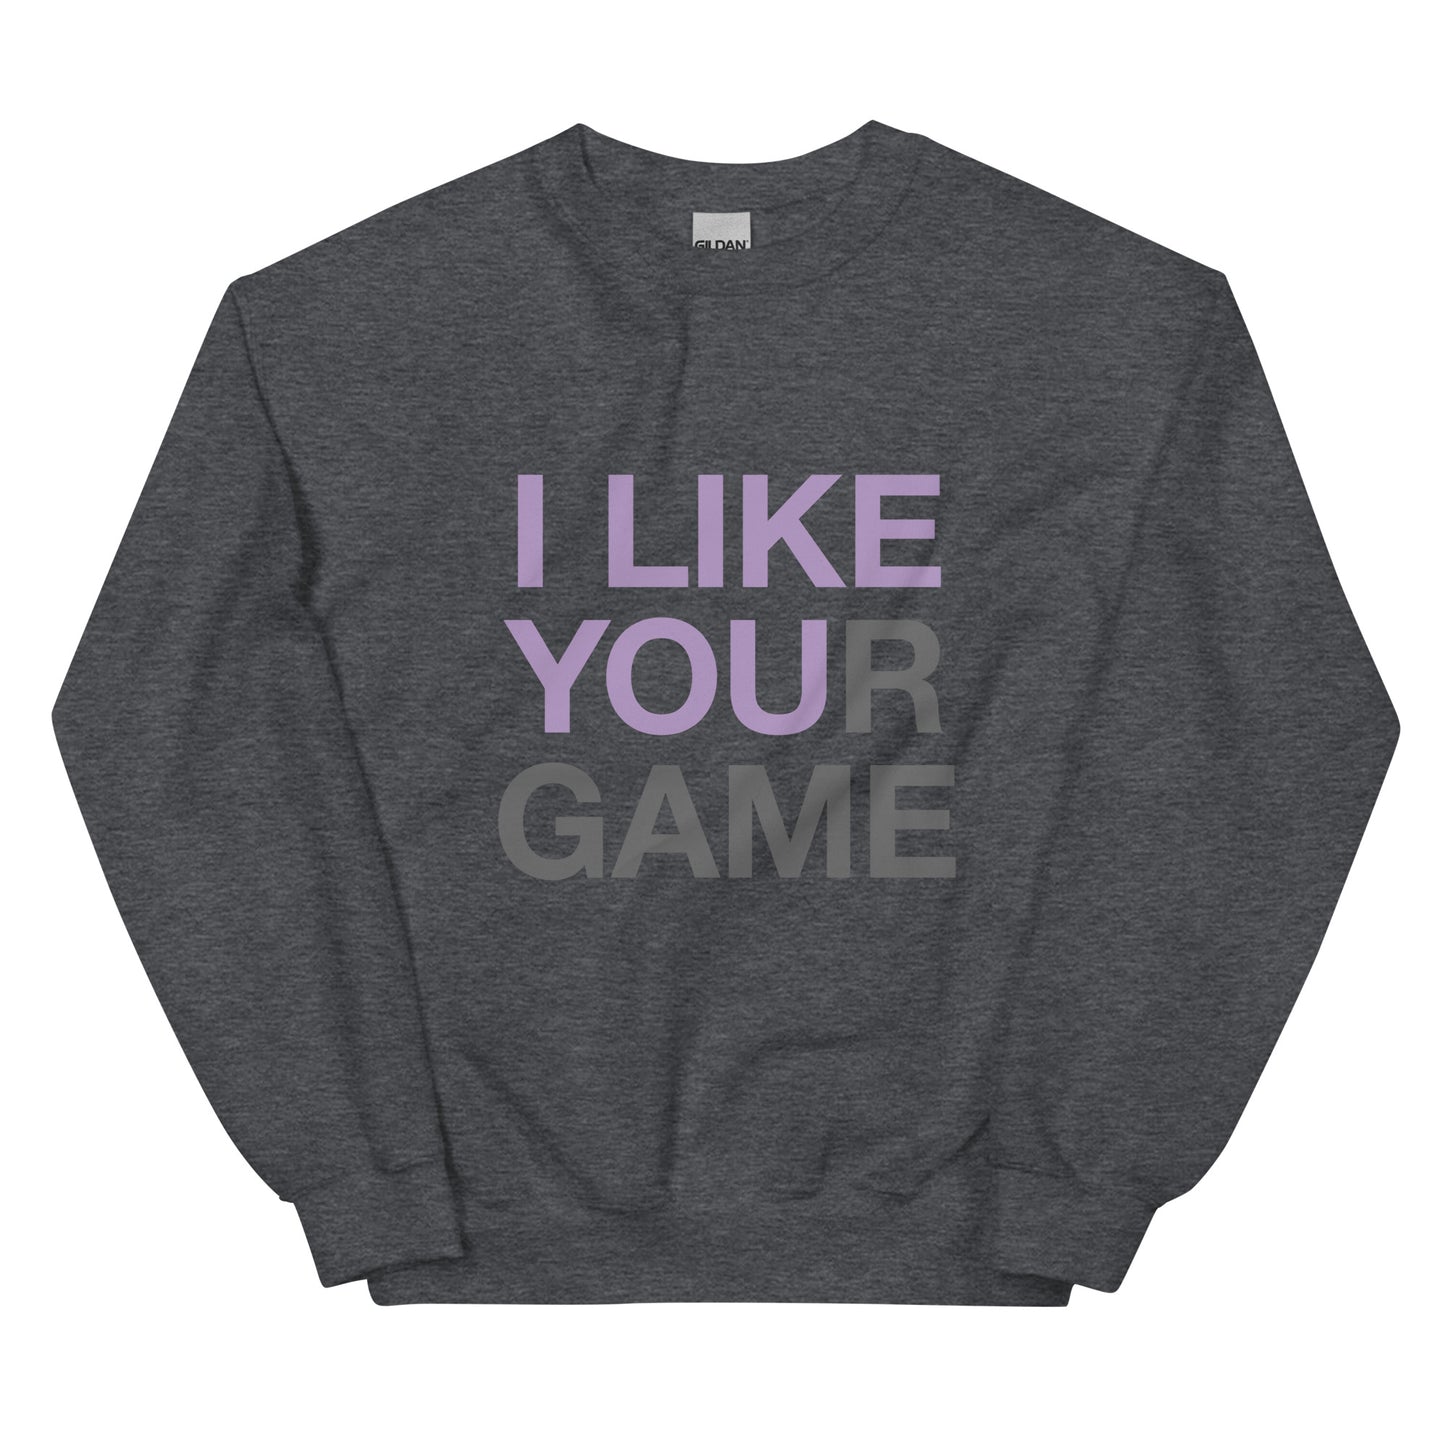 I LIKE YOUR GAME Unisex Sweatshirt